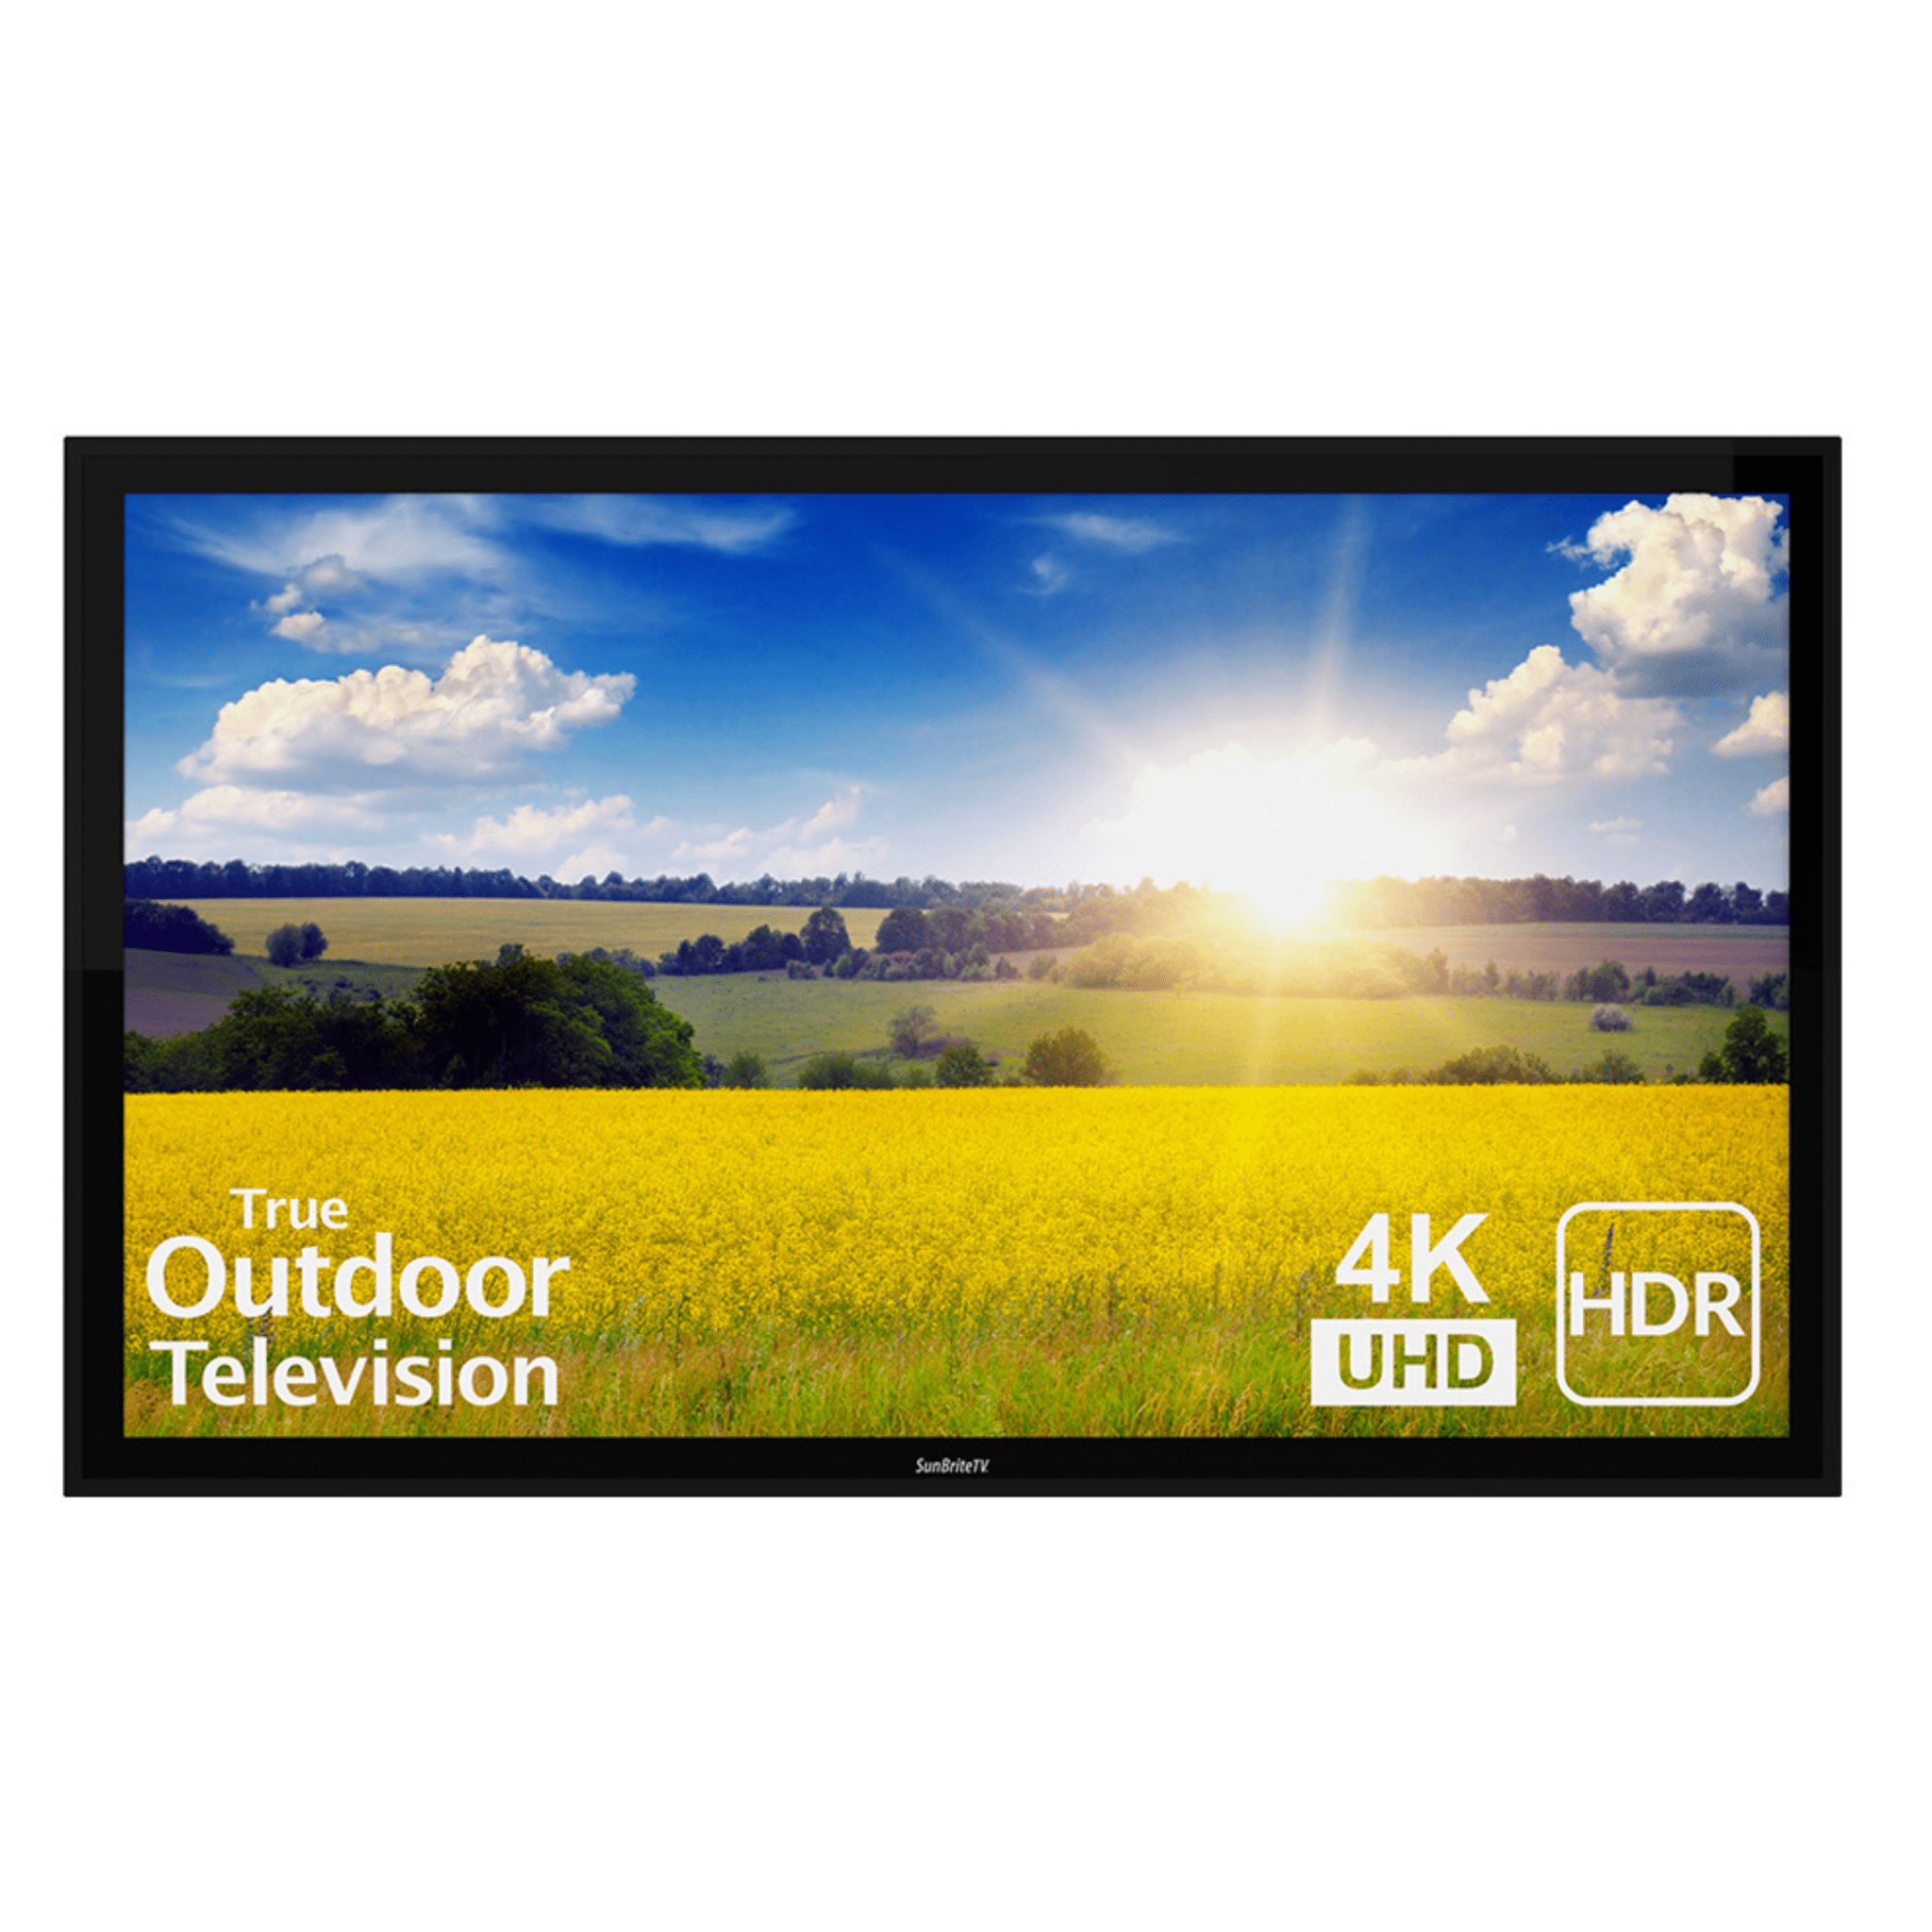 SunBrite™ Pro 2 Series Full Sun - Dreamedia AV